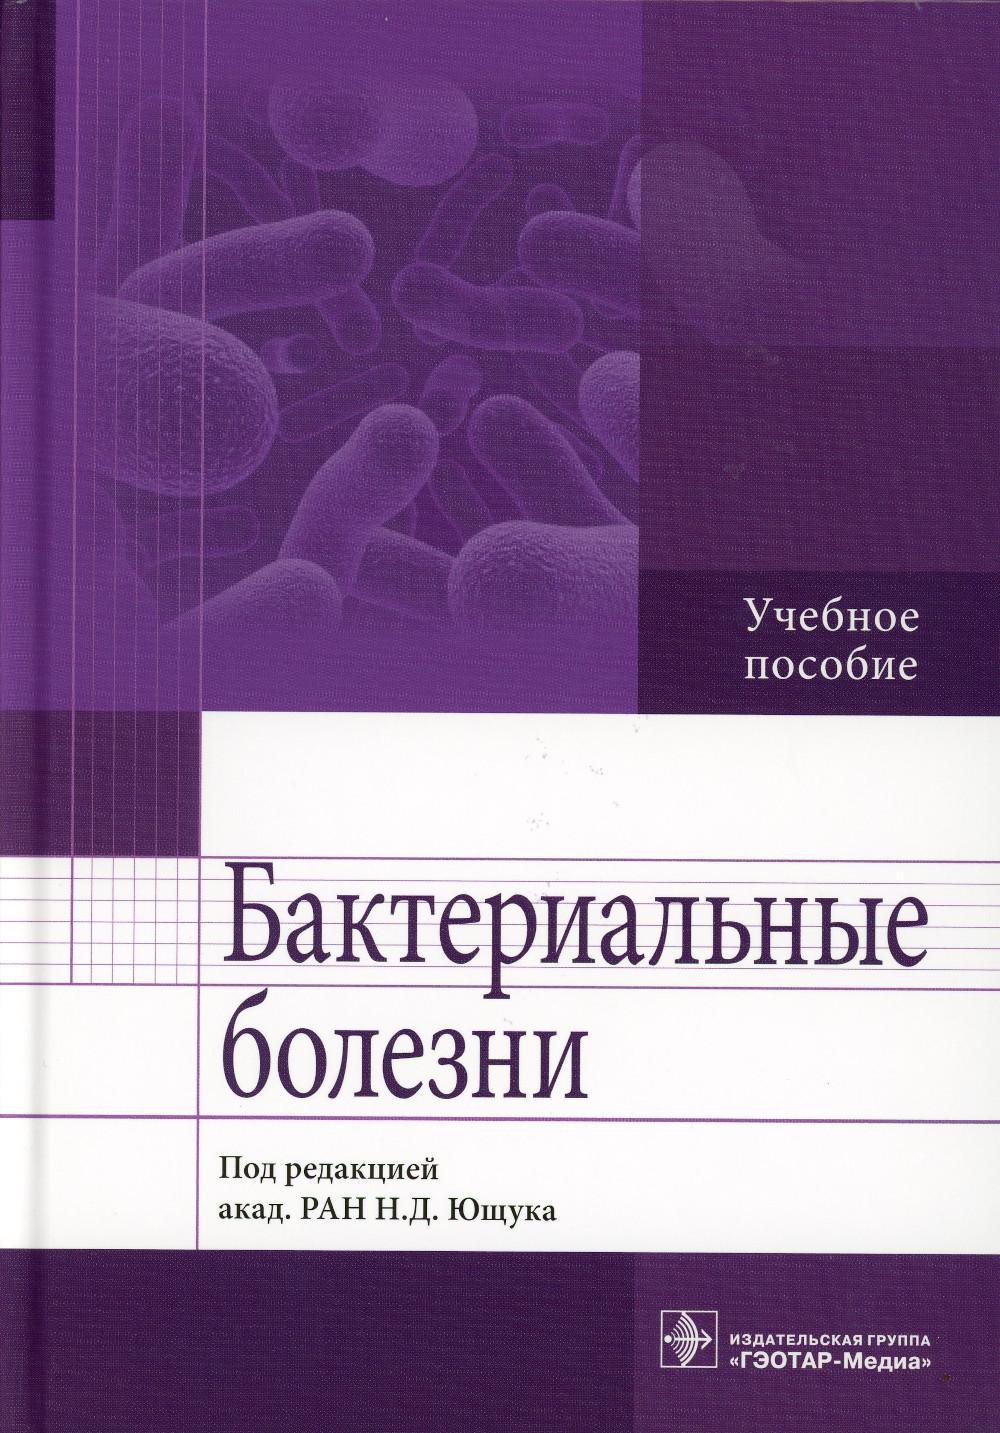 Бактериальные болезни: Учебное пособие